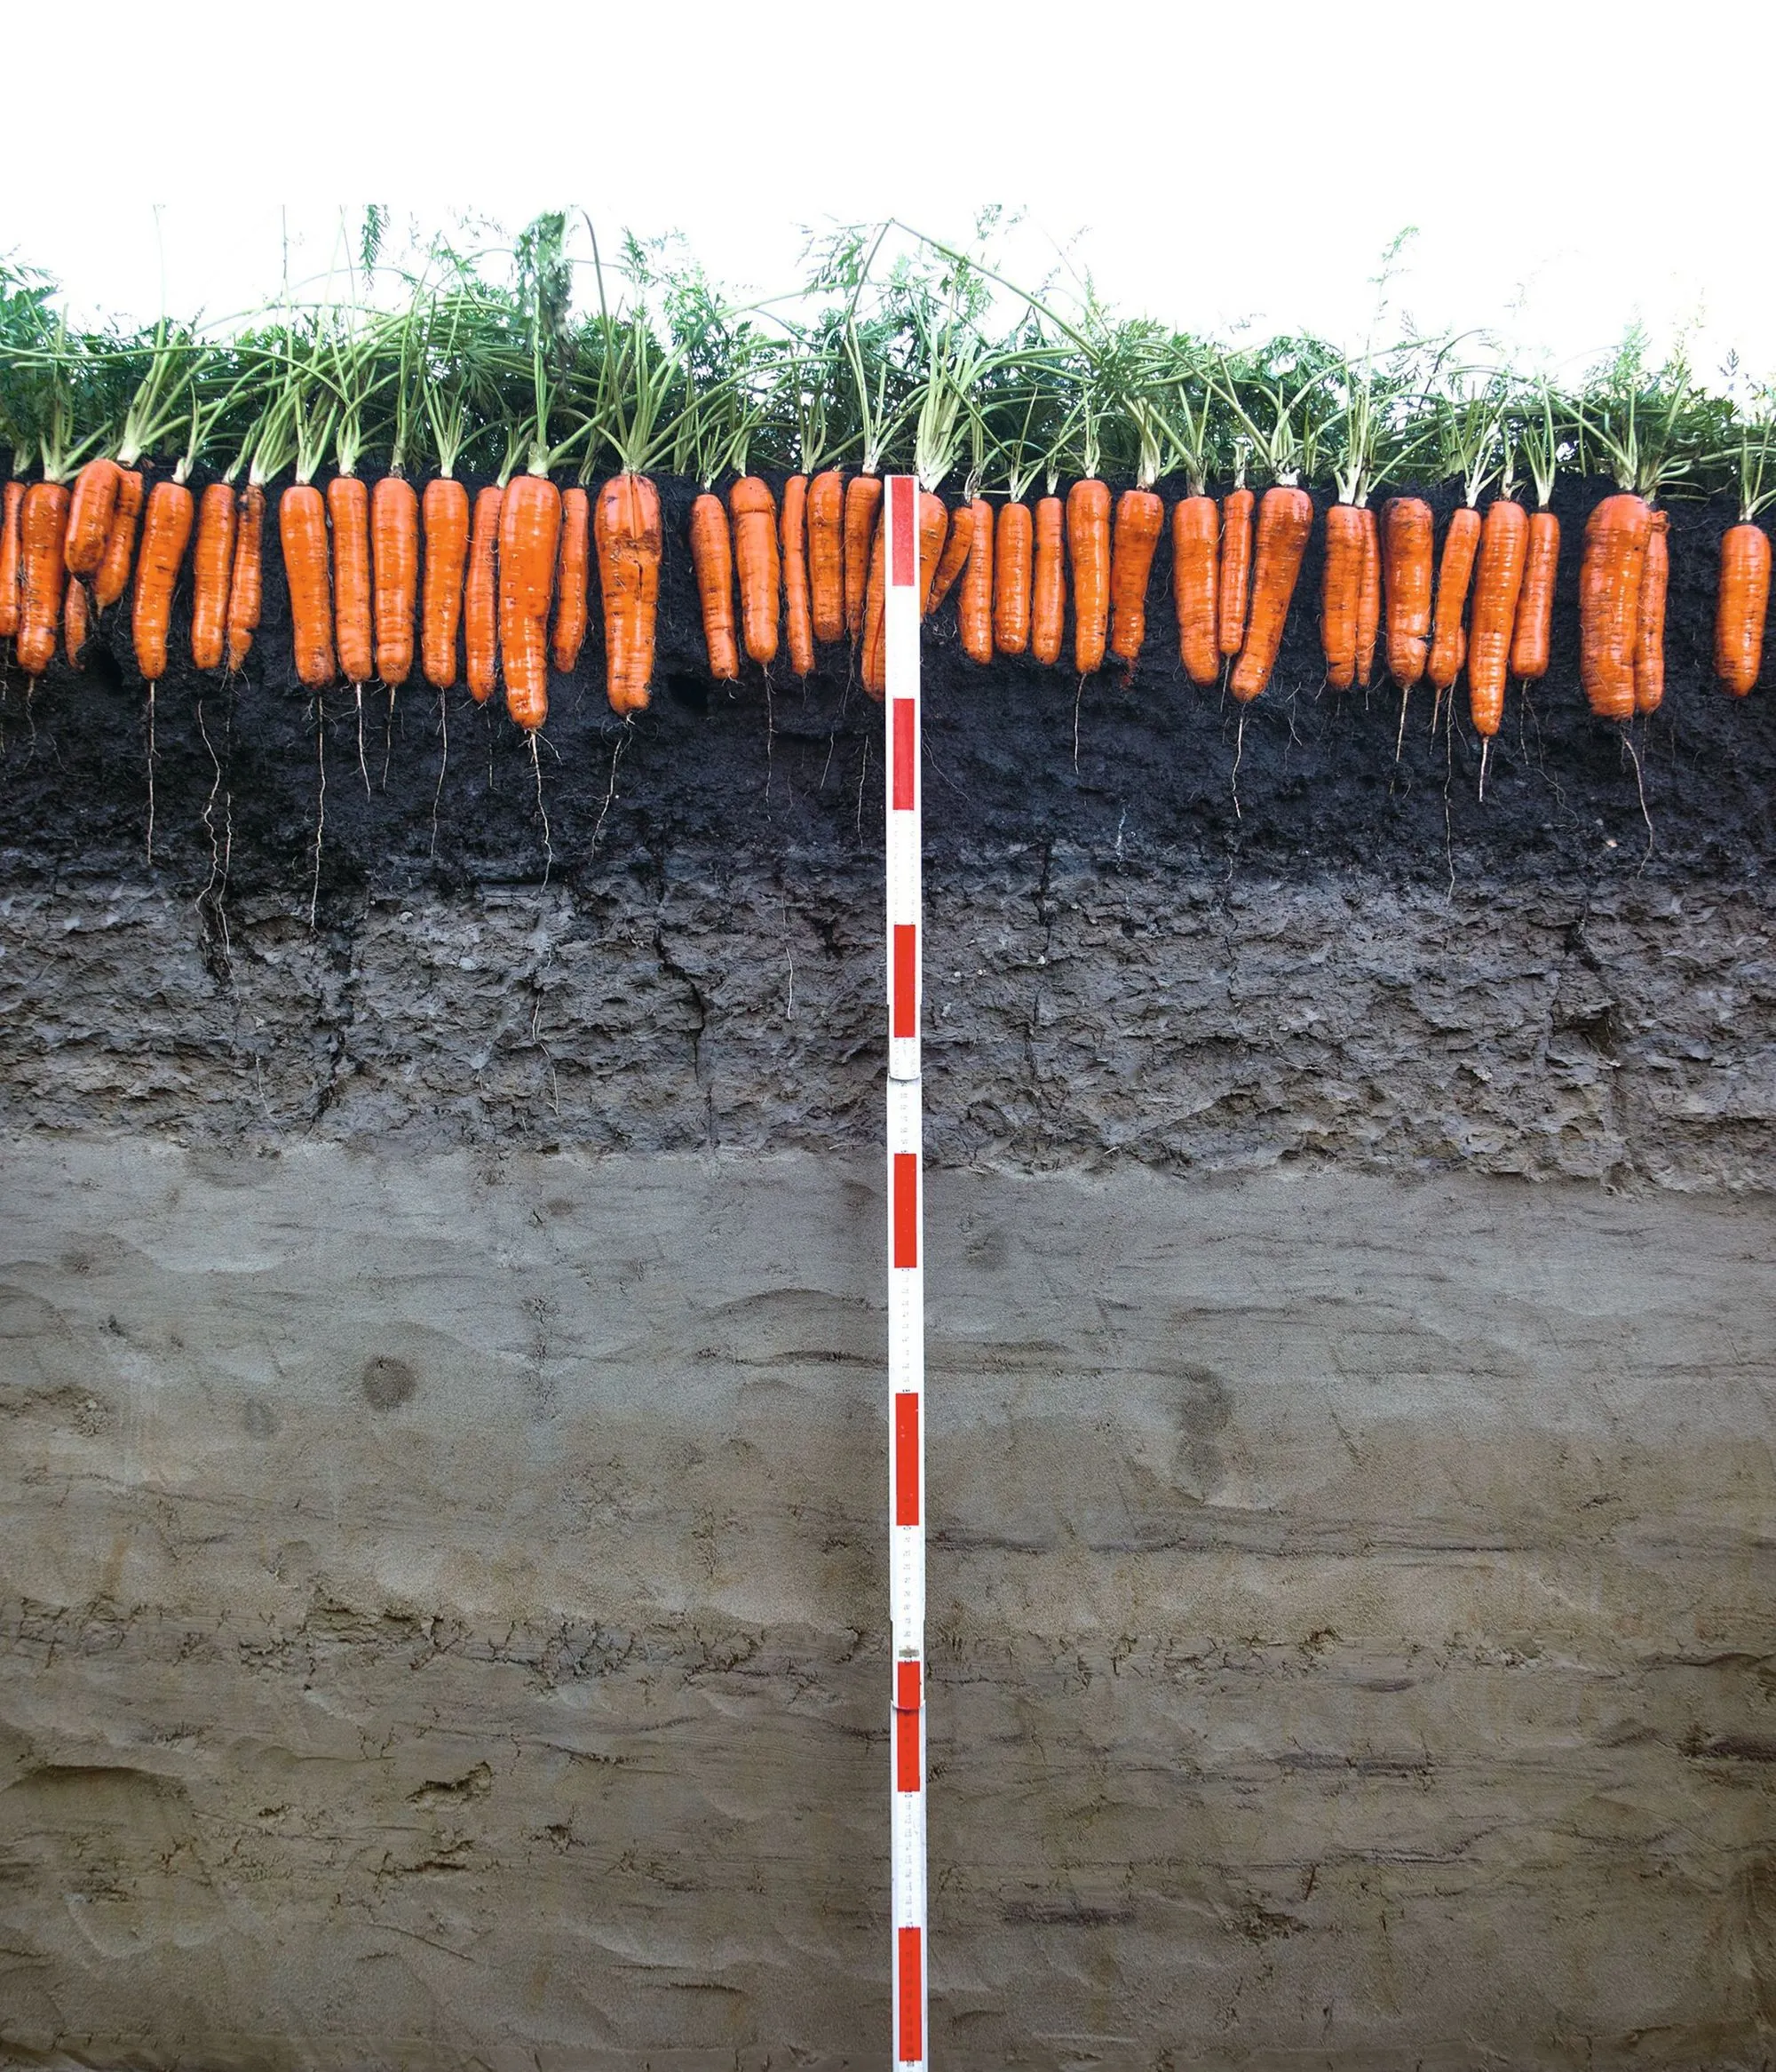  Des carottes prêtes à la récolte dans un sol de marais drainé.